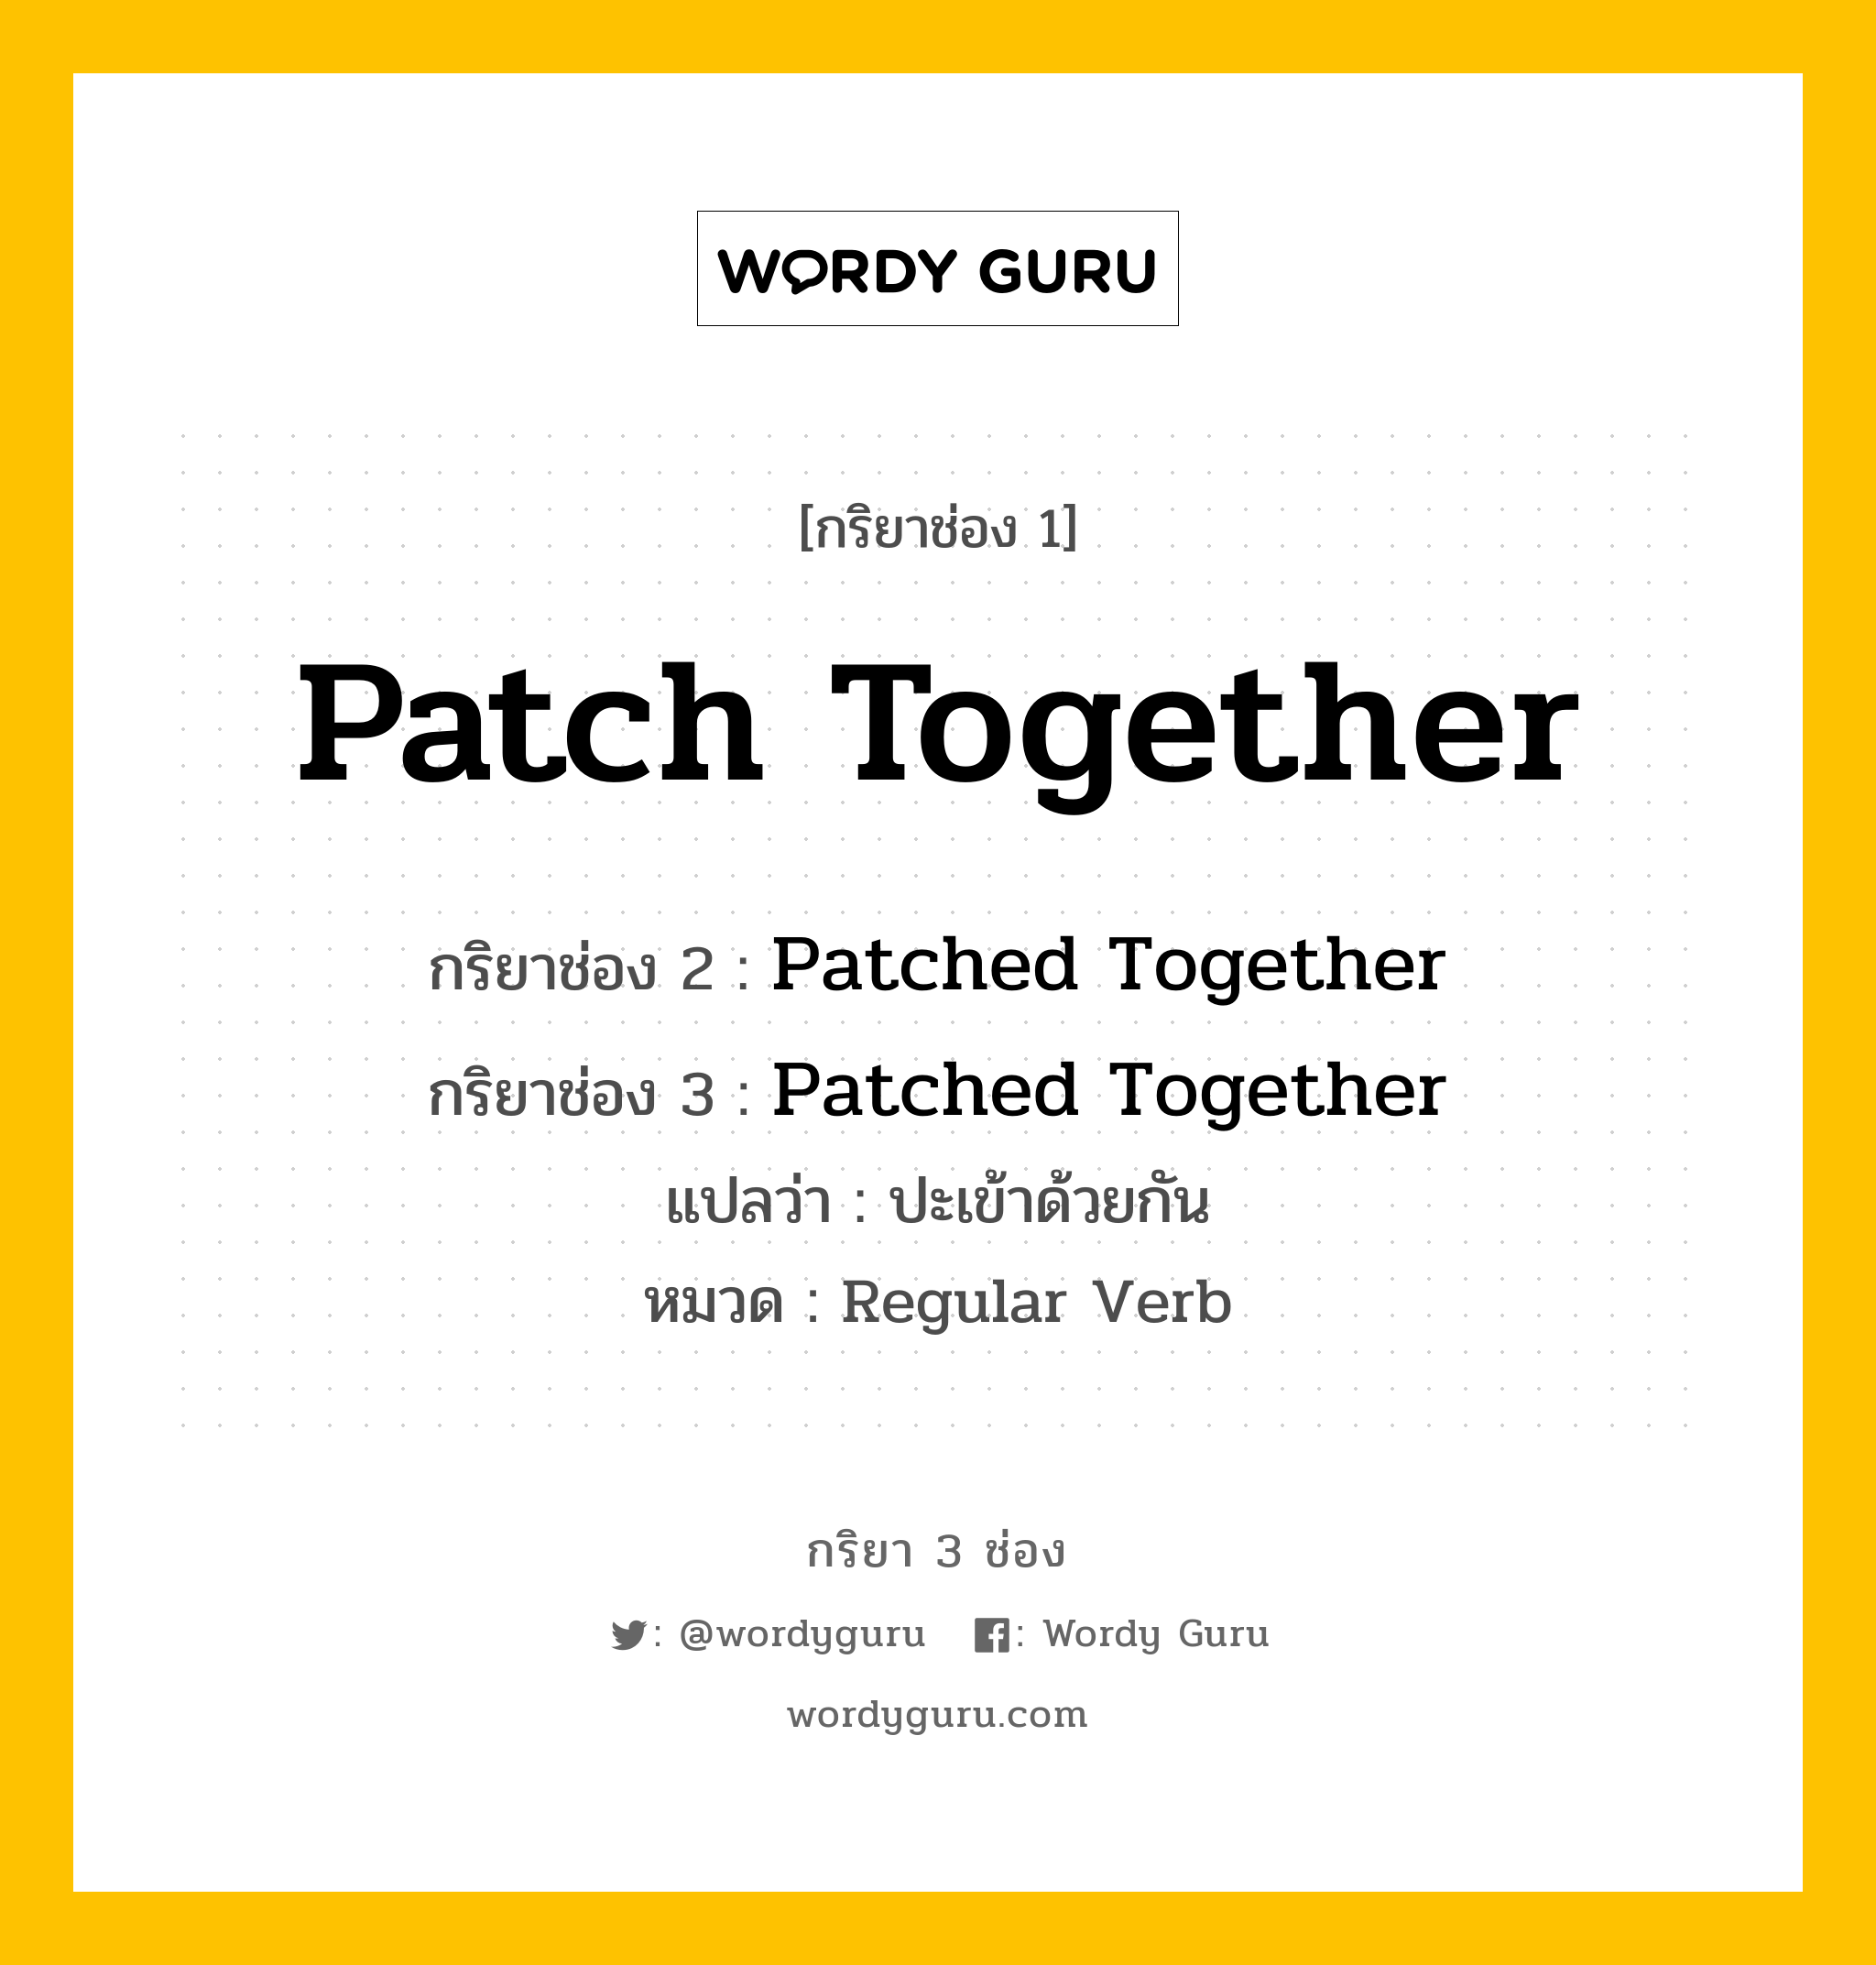 กริยา 3 ช่อง ของ Patch Together คืออะไร? มาดูคำอ่าน คำแปลกันเลย, กริยาช่อง 1 Patch Together กริยาช่อง 2 Patched Together กริยาช่อง 3 Patched Together แปลว่า ปะเข้าด้วยกัน หมวด Regular Verb หมวด Regular Verb